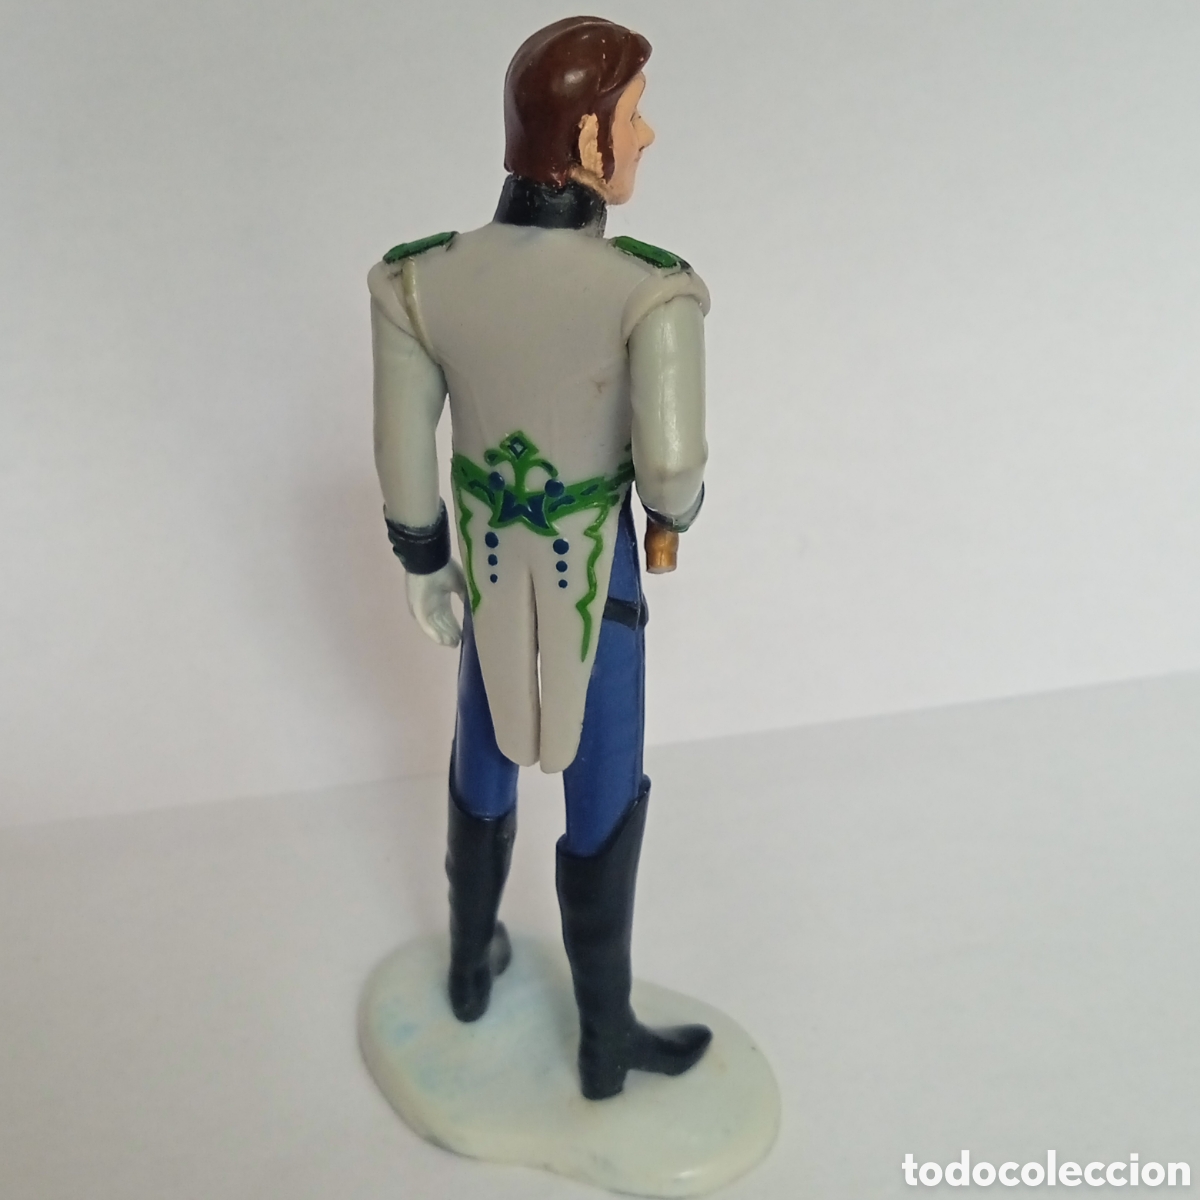 Disney Frozen Hans PVC Figure